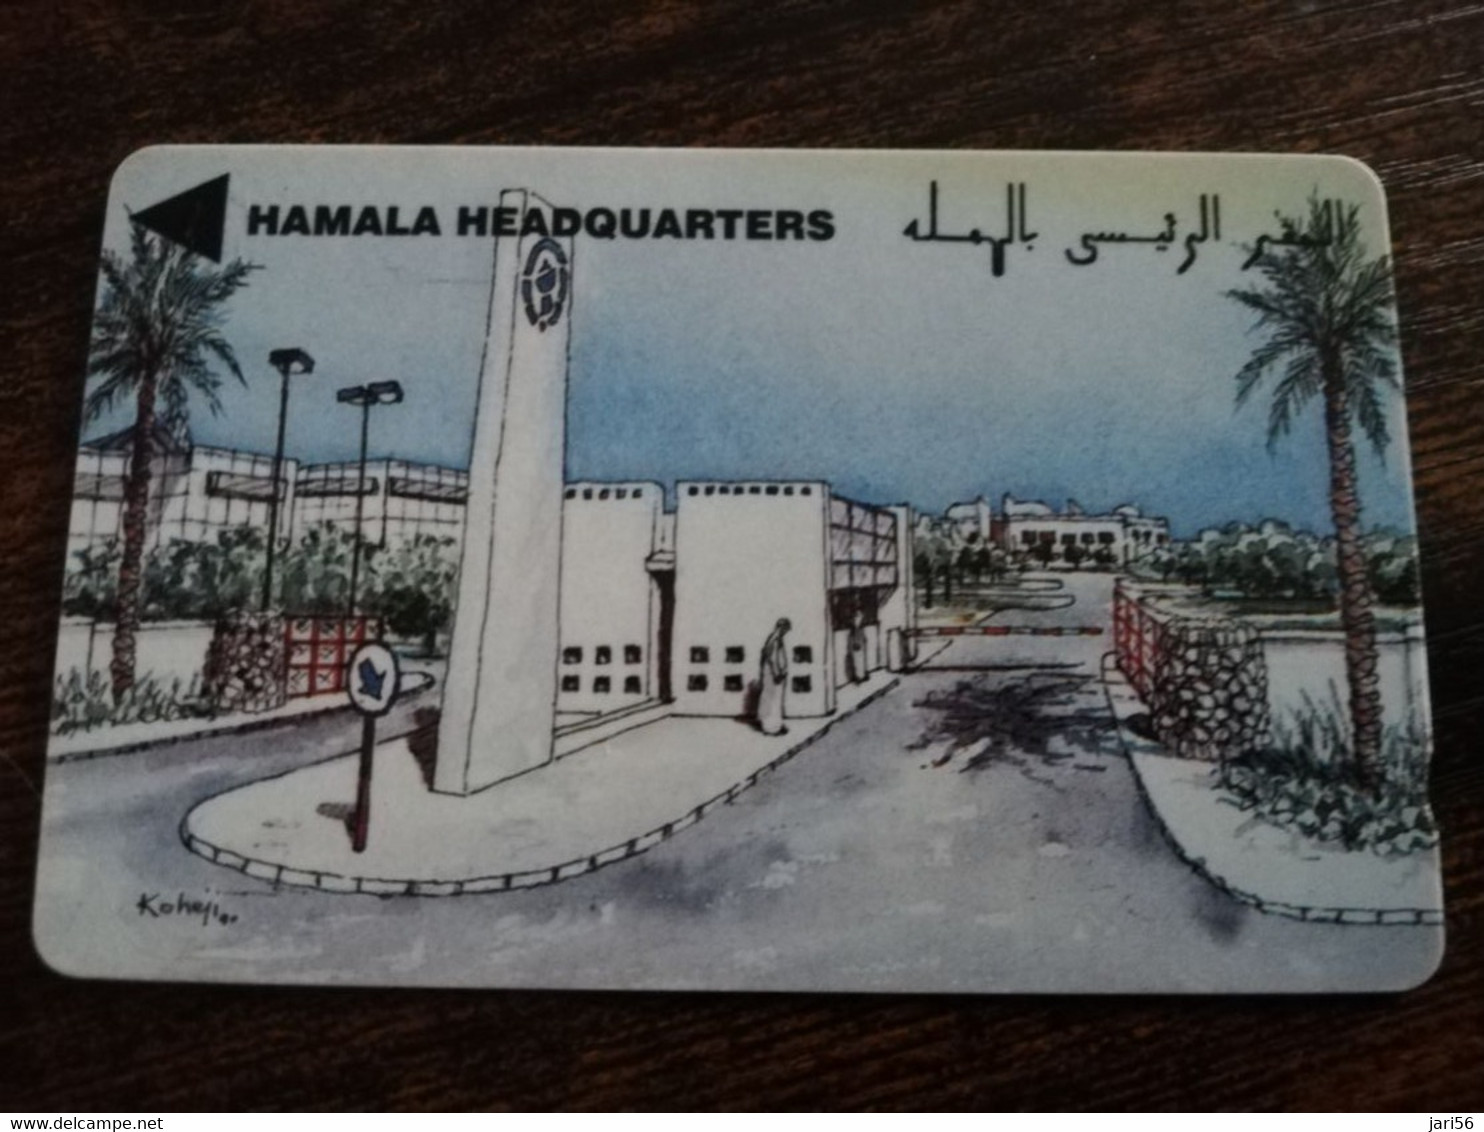 BAHRAIN   GPT CARD  10 UNITS/ BATELCO HEADQUARTERS     / BHN26  / 4BAHA  SHALLOW  NOTCH    **9140** - Bahrein